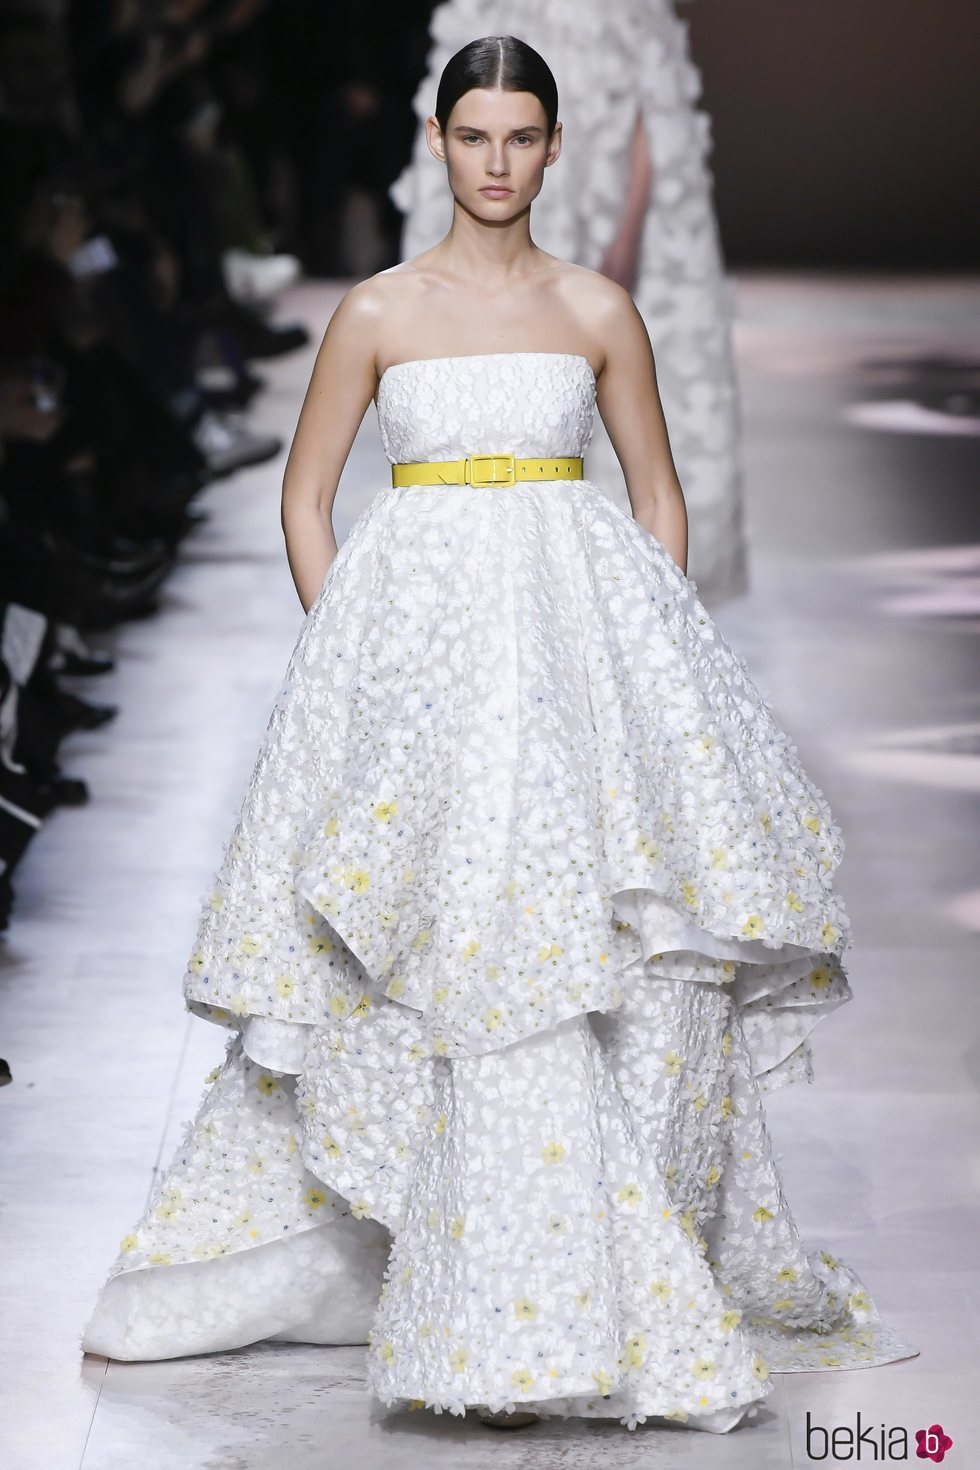 Vestido de novia del desfile de Alta Costura 2020 de Givenchy